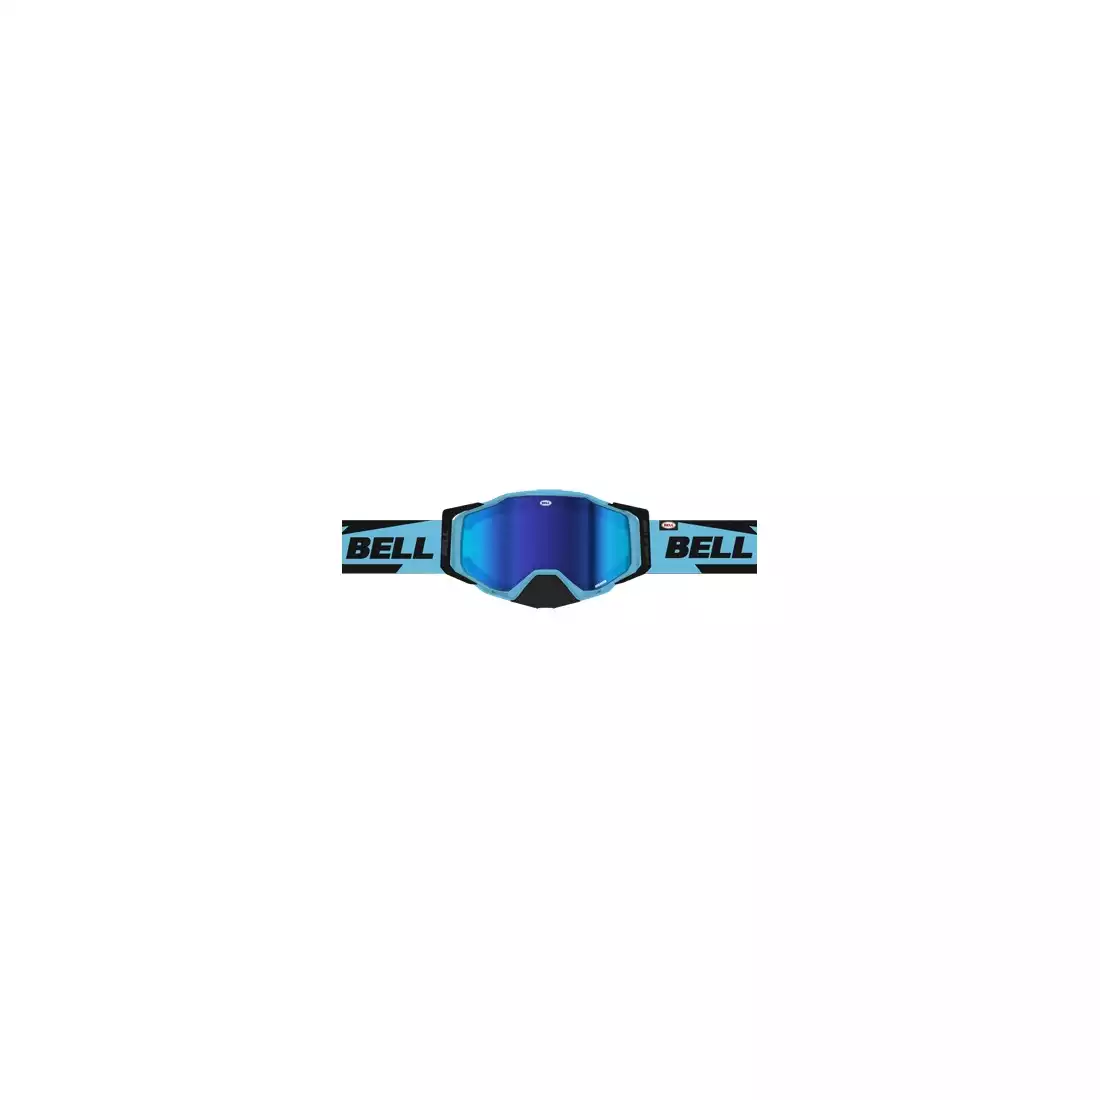 BELL okuliare na bicykel BREAKER Bolt Matte Black/Blue (REFLEX REVO BLUE MIRROR - SMOKE TINT) BEL-7122856